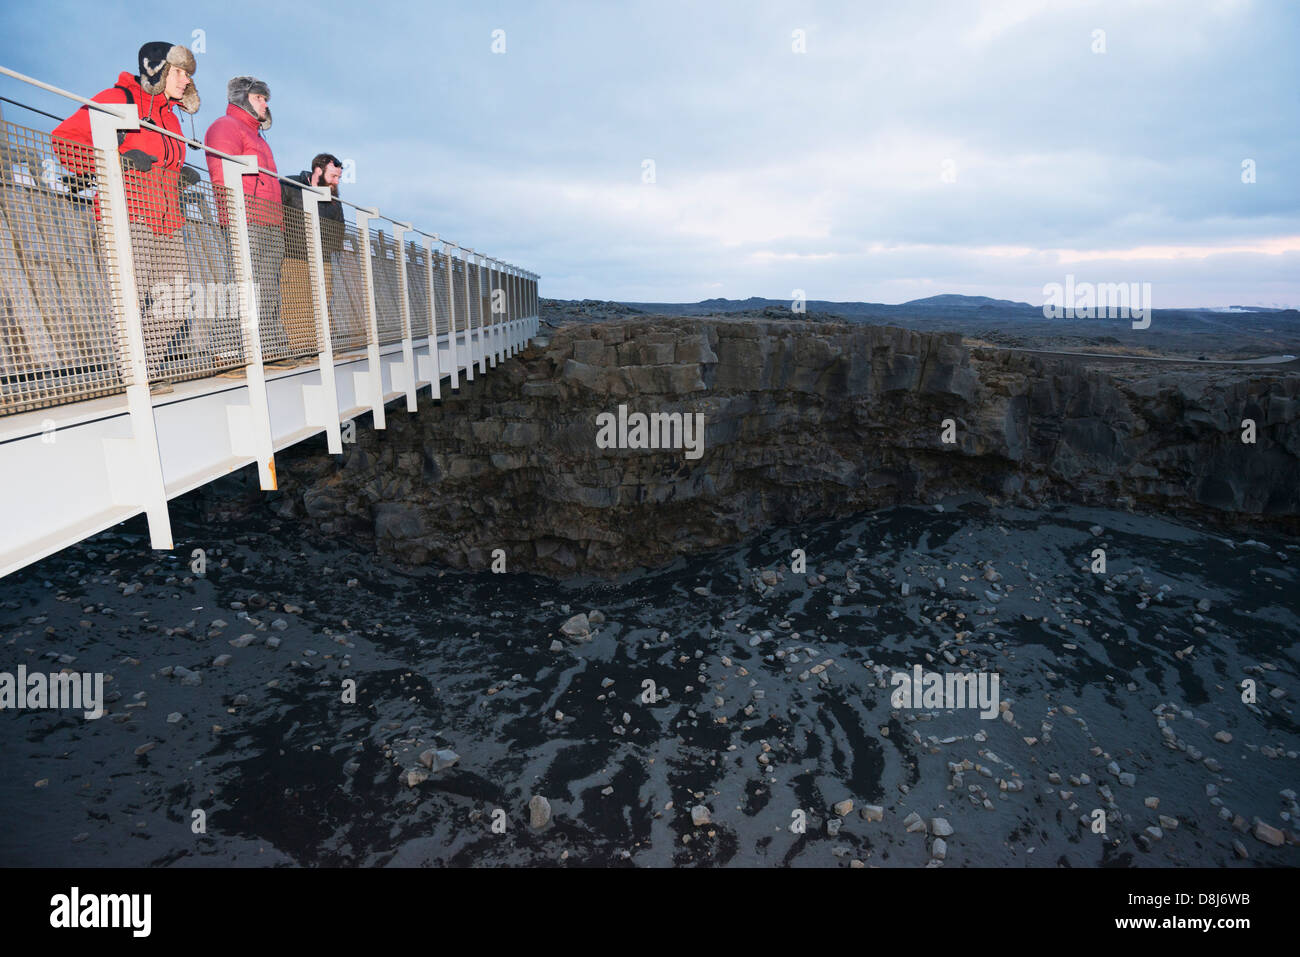 Europa, Islandia, la península de Reykjanes, puente entre dos continentes, causado por el movimiento de las placas tectónicas (MR) Foto de stock